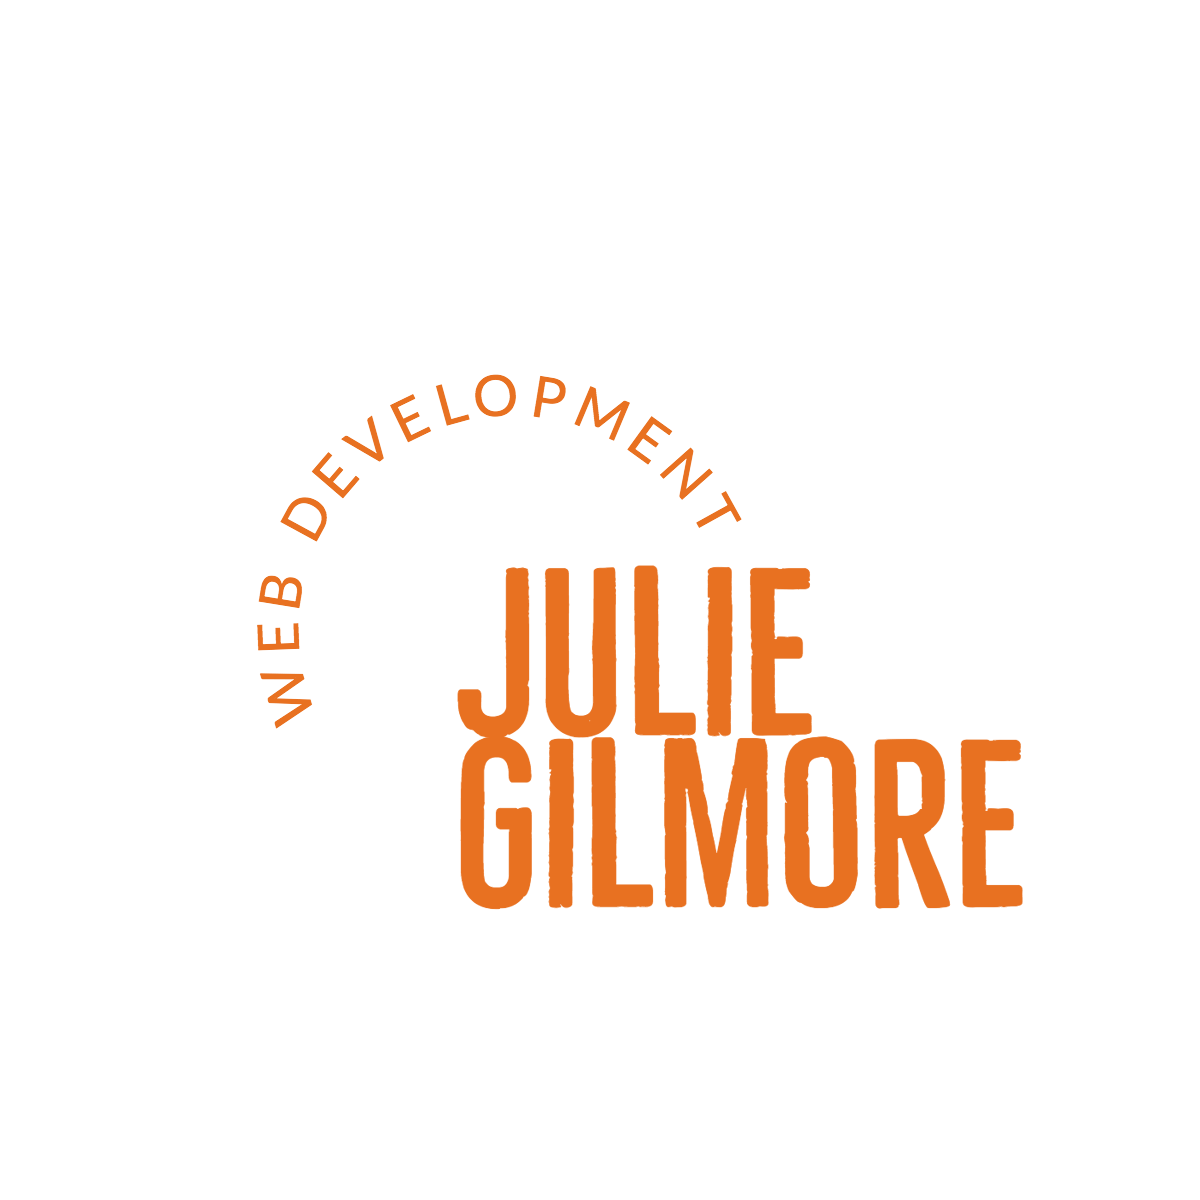 Julie Gilmore's logo